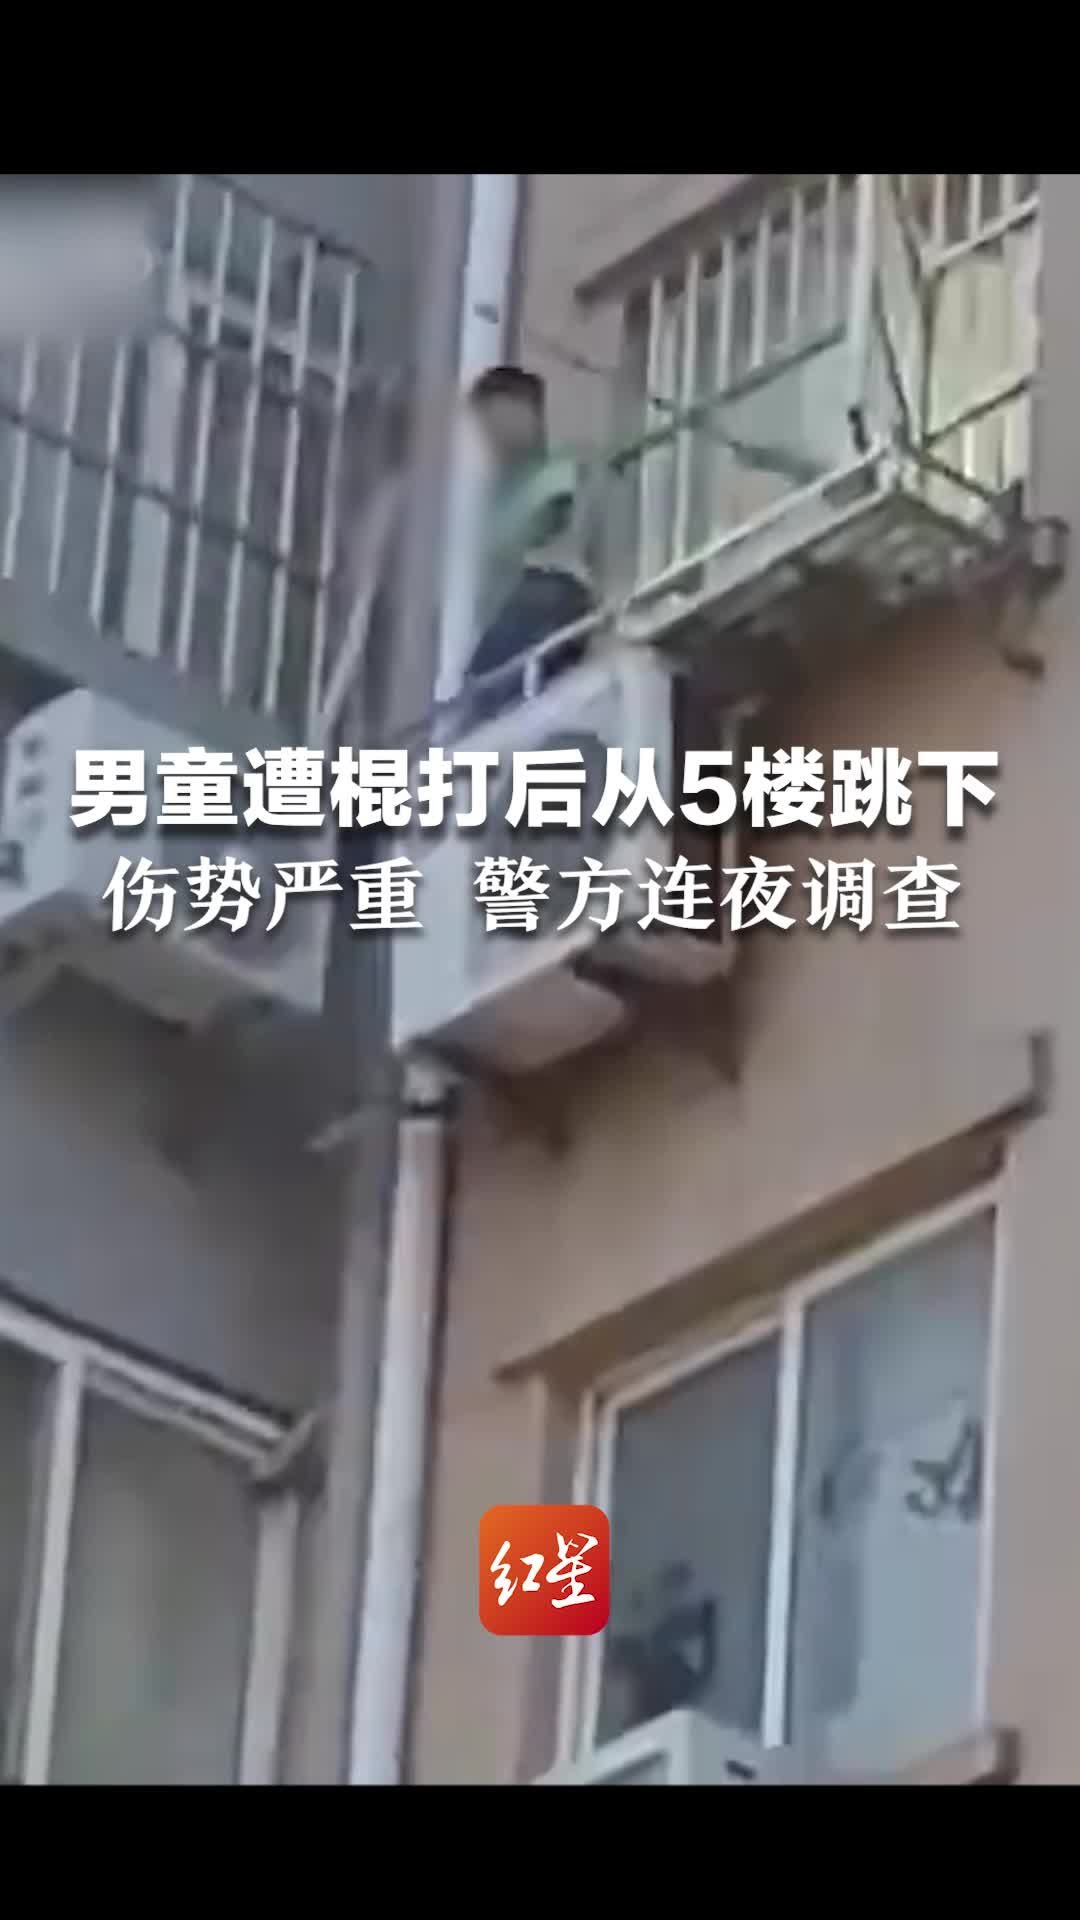 香港前总警司跳楼身亡_新闻中心_新浪网